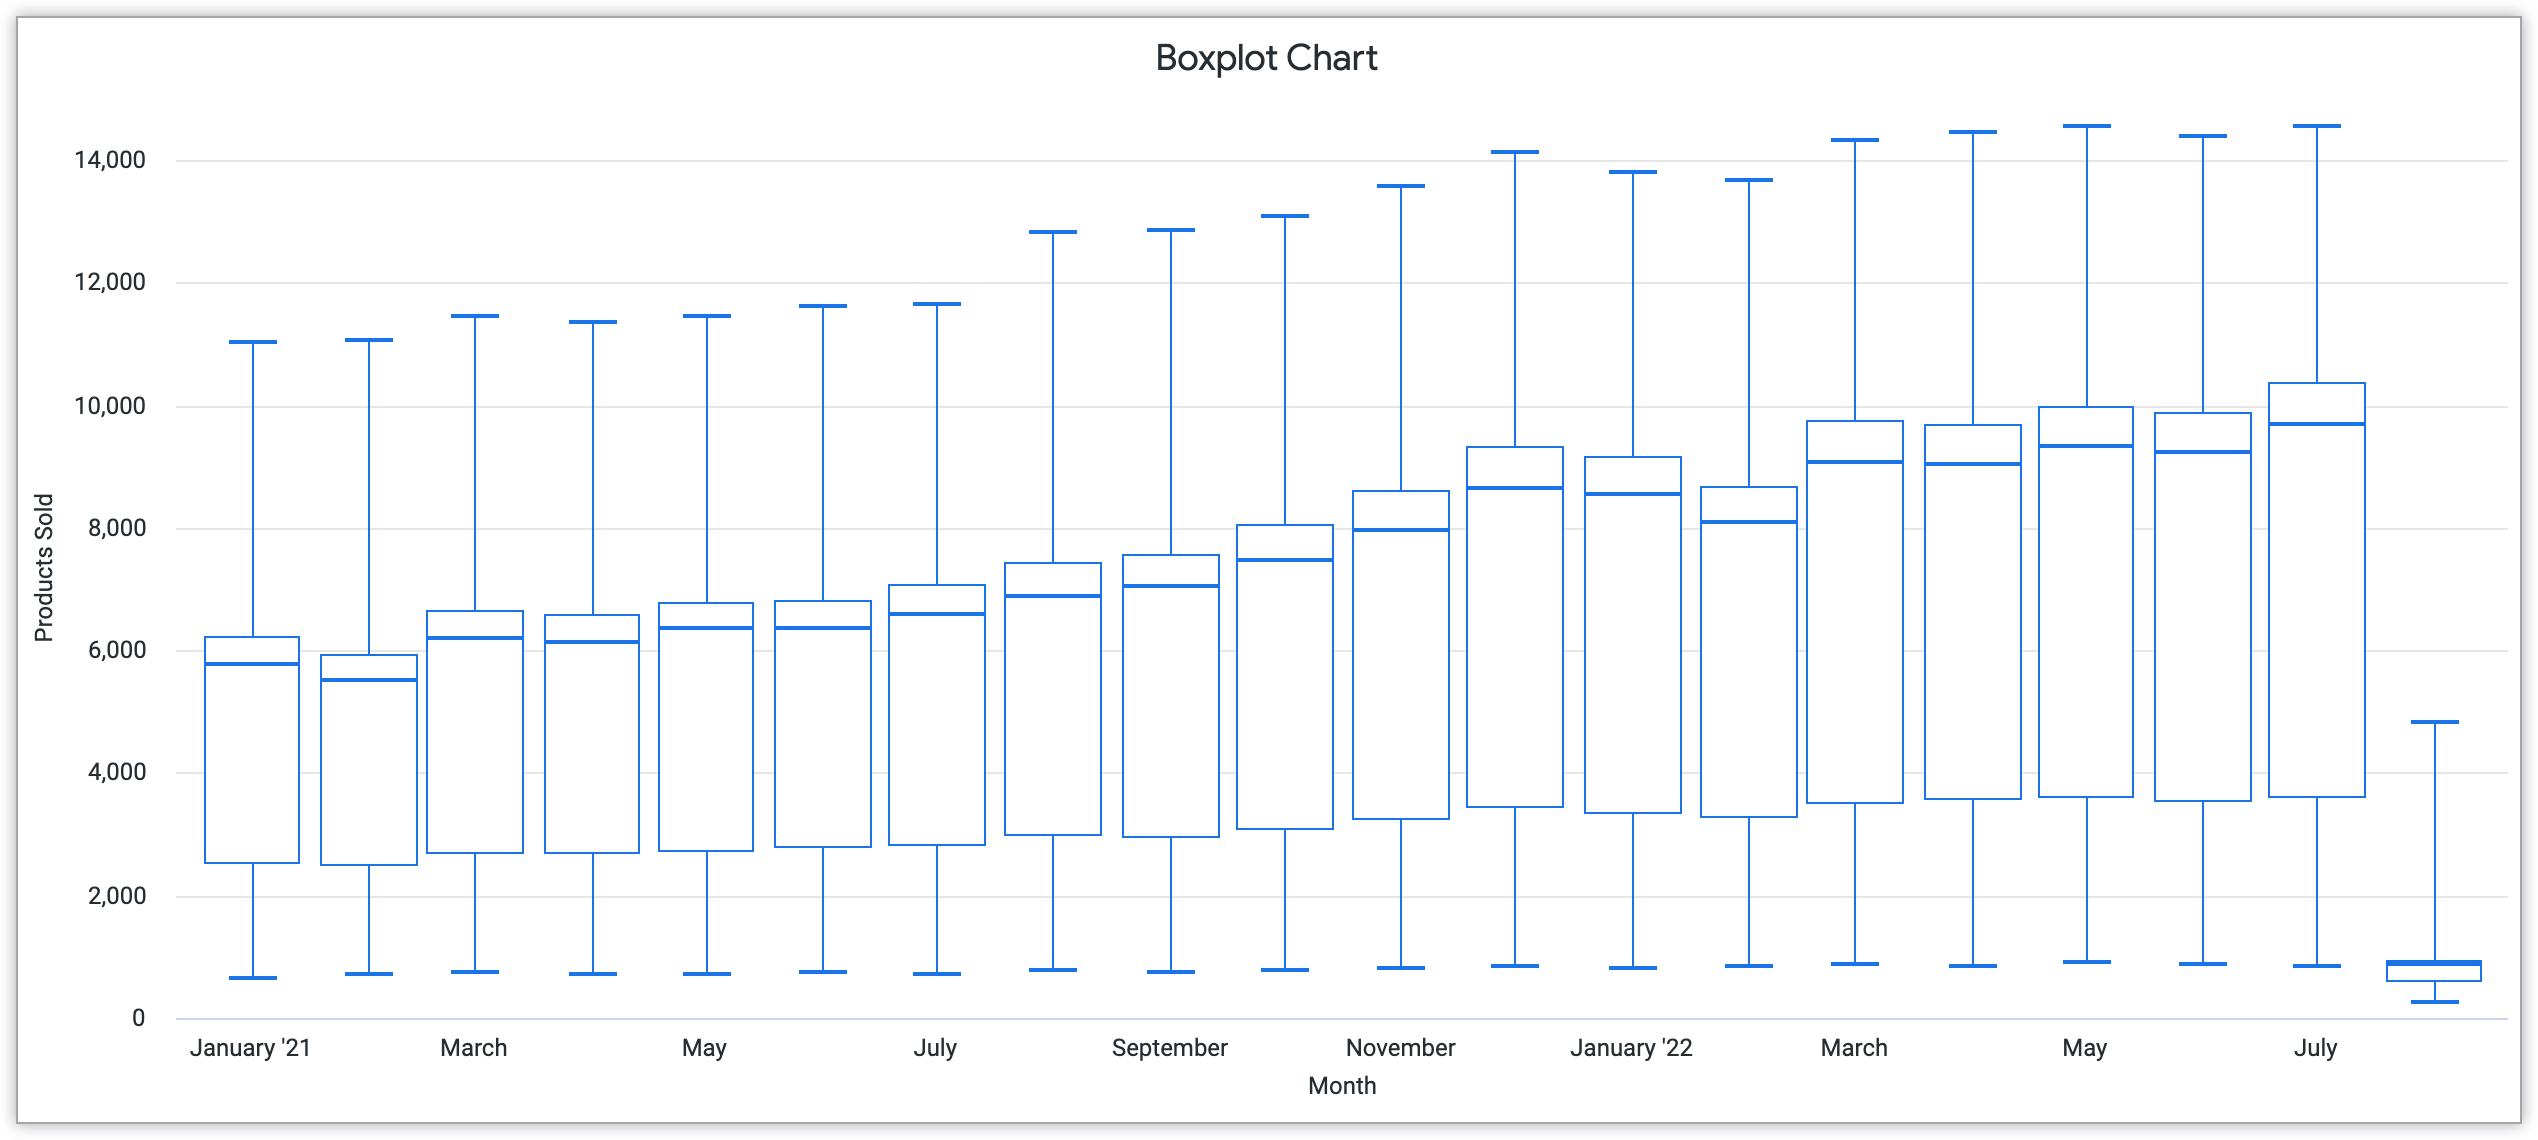 Boxplot-Diagramm, das Monat auf der x-Achse und verkaufte Produkte auf der y-Achse zeigt.